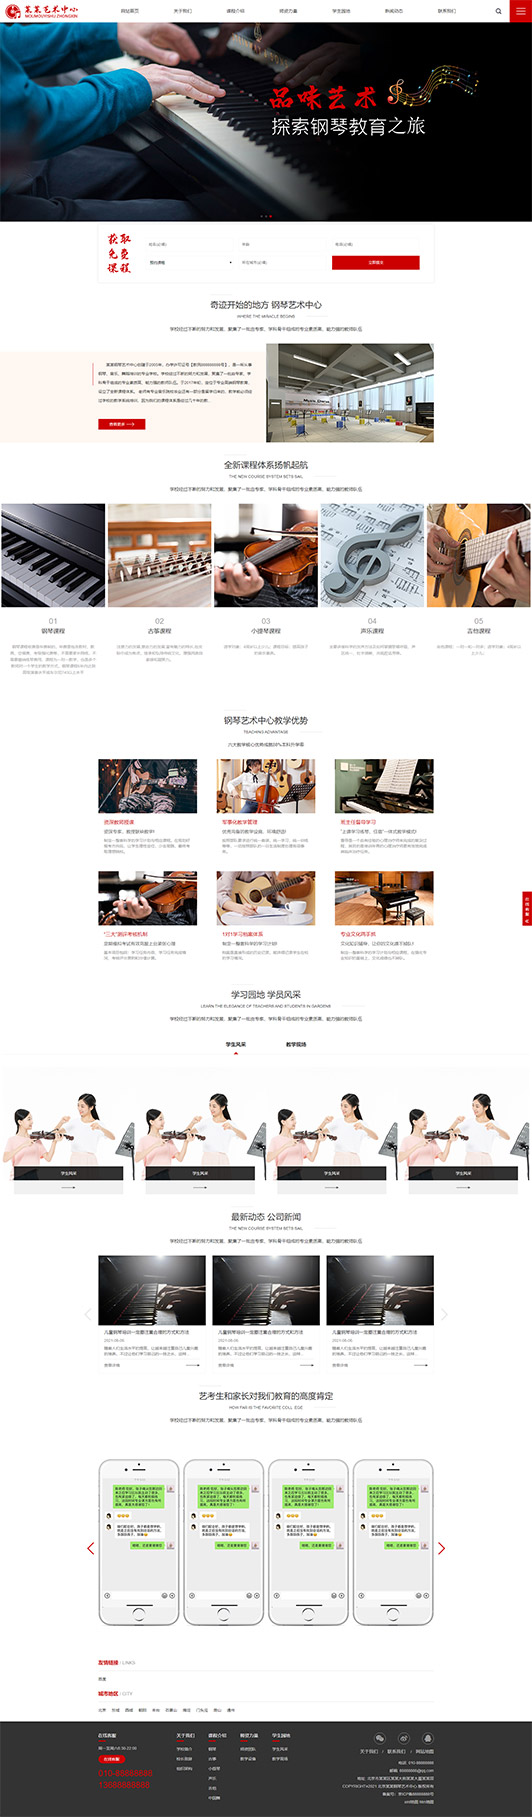 娄底钢琴艺术培训公司响应式企业网站